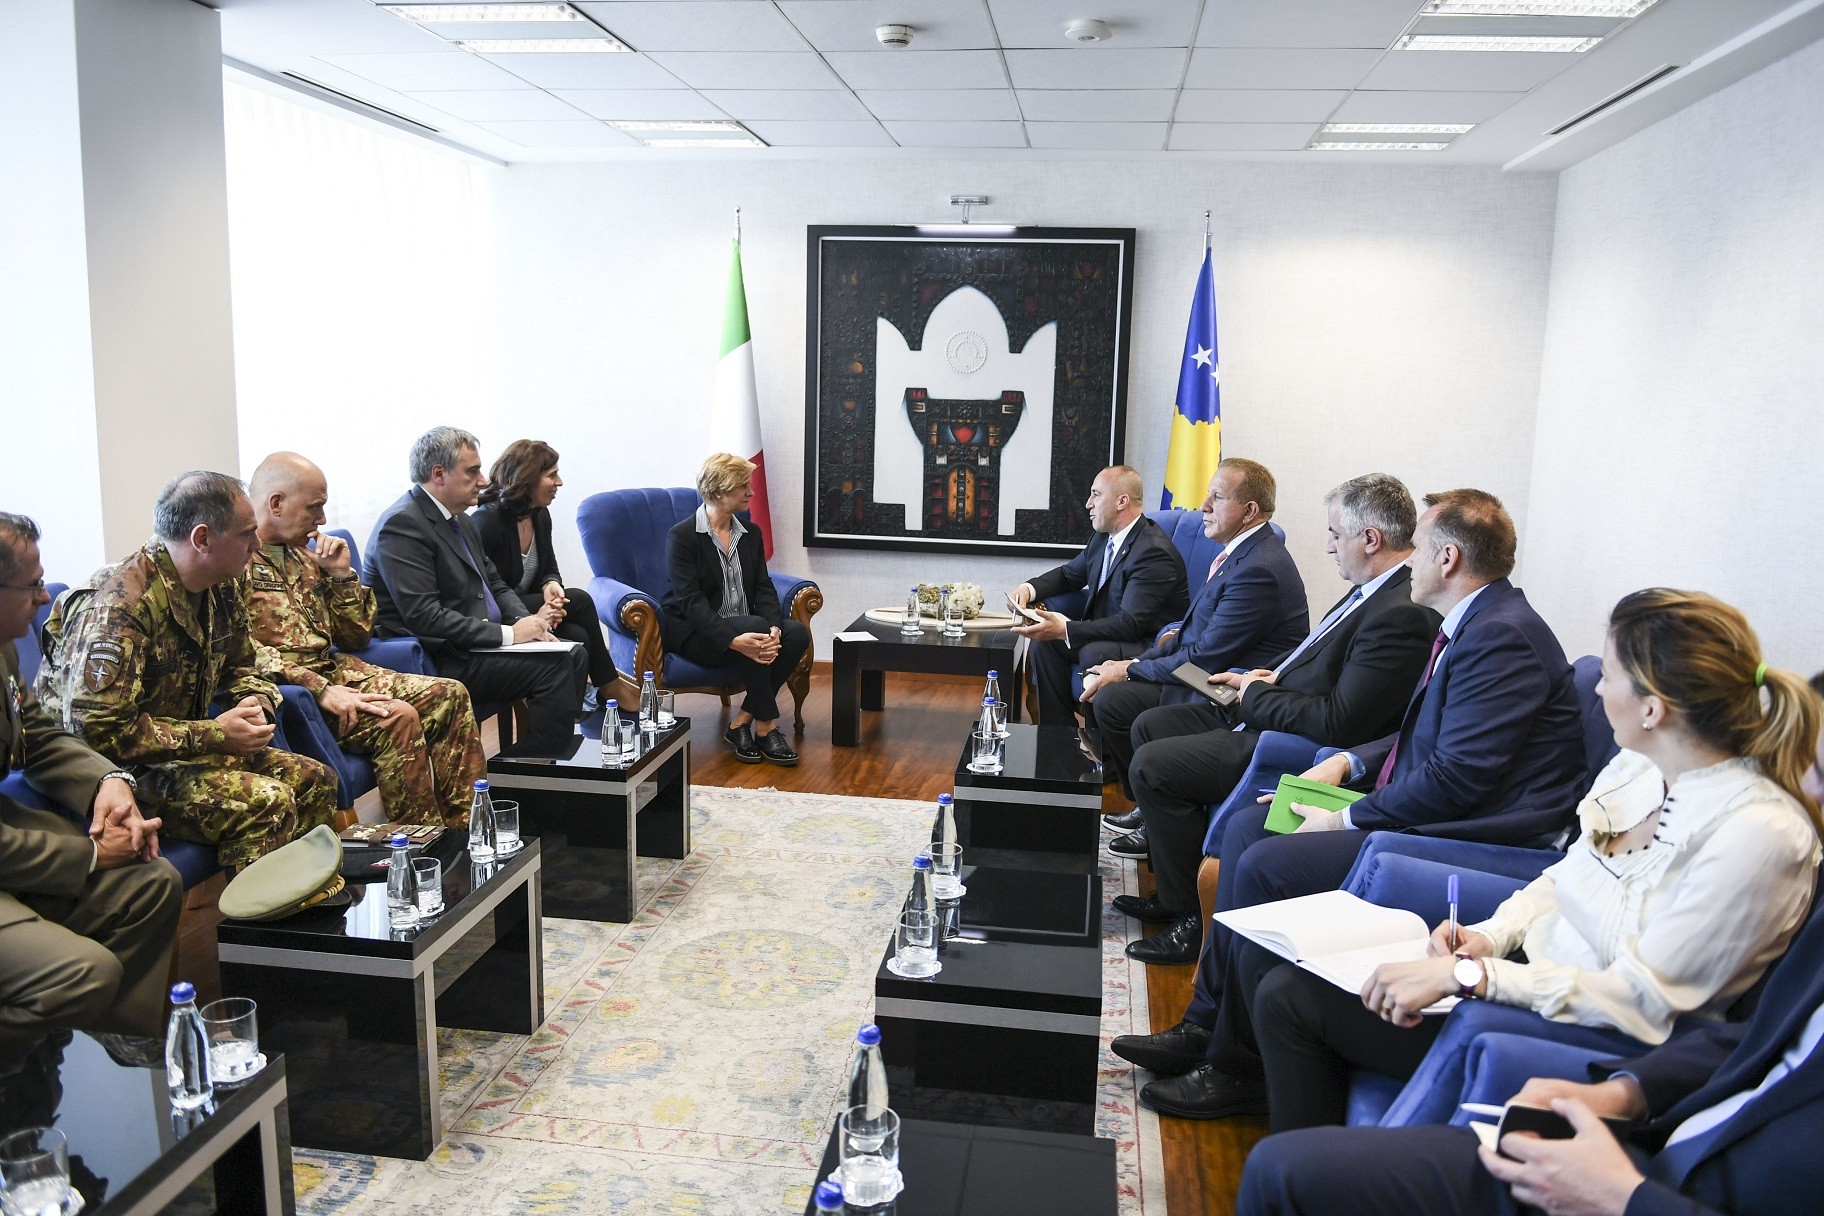 Italia përkrah proceset e integrimeve euroatlantike të Kosovës   